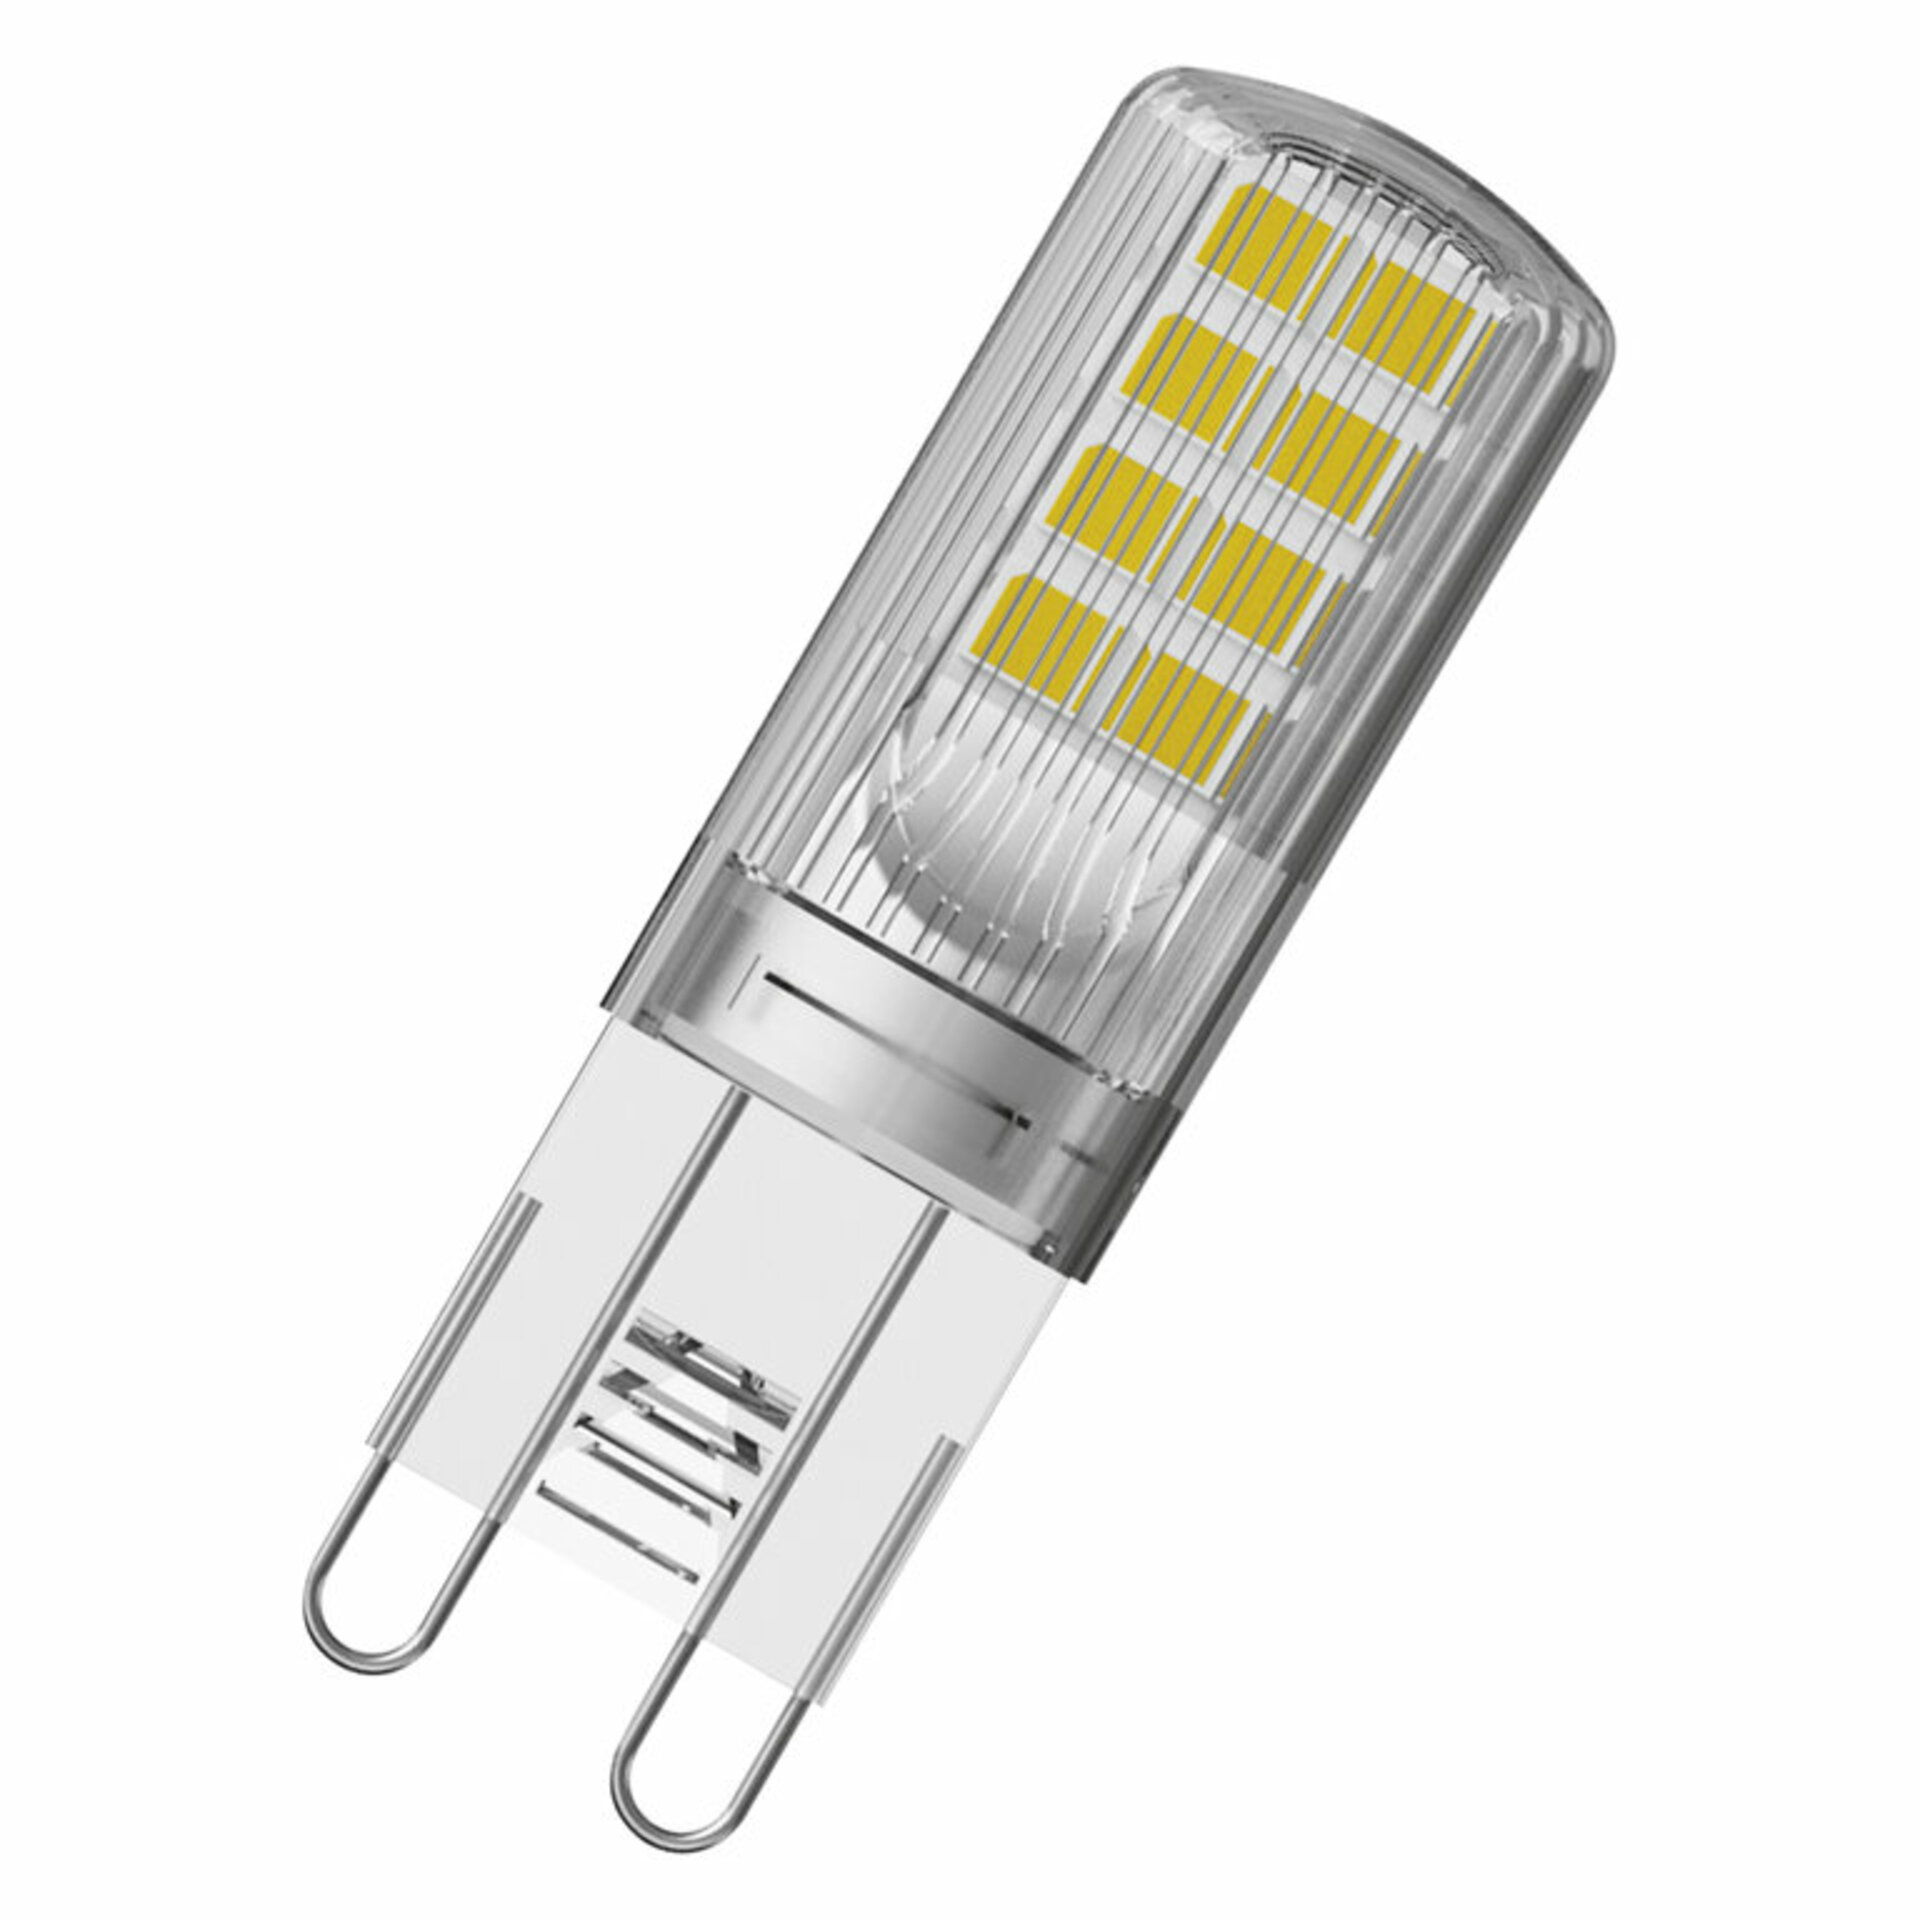 OSRAM LEDVANCE LED PIN30 P 2.6 W 840 CL G9 4099854064517